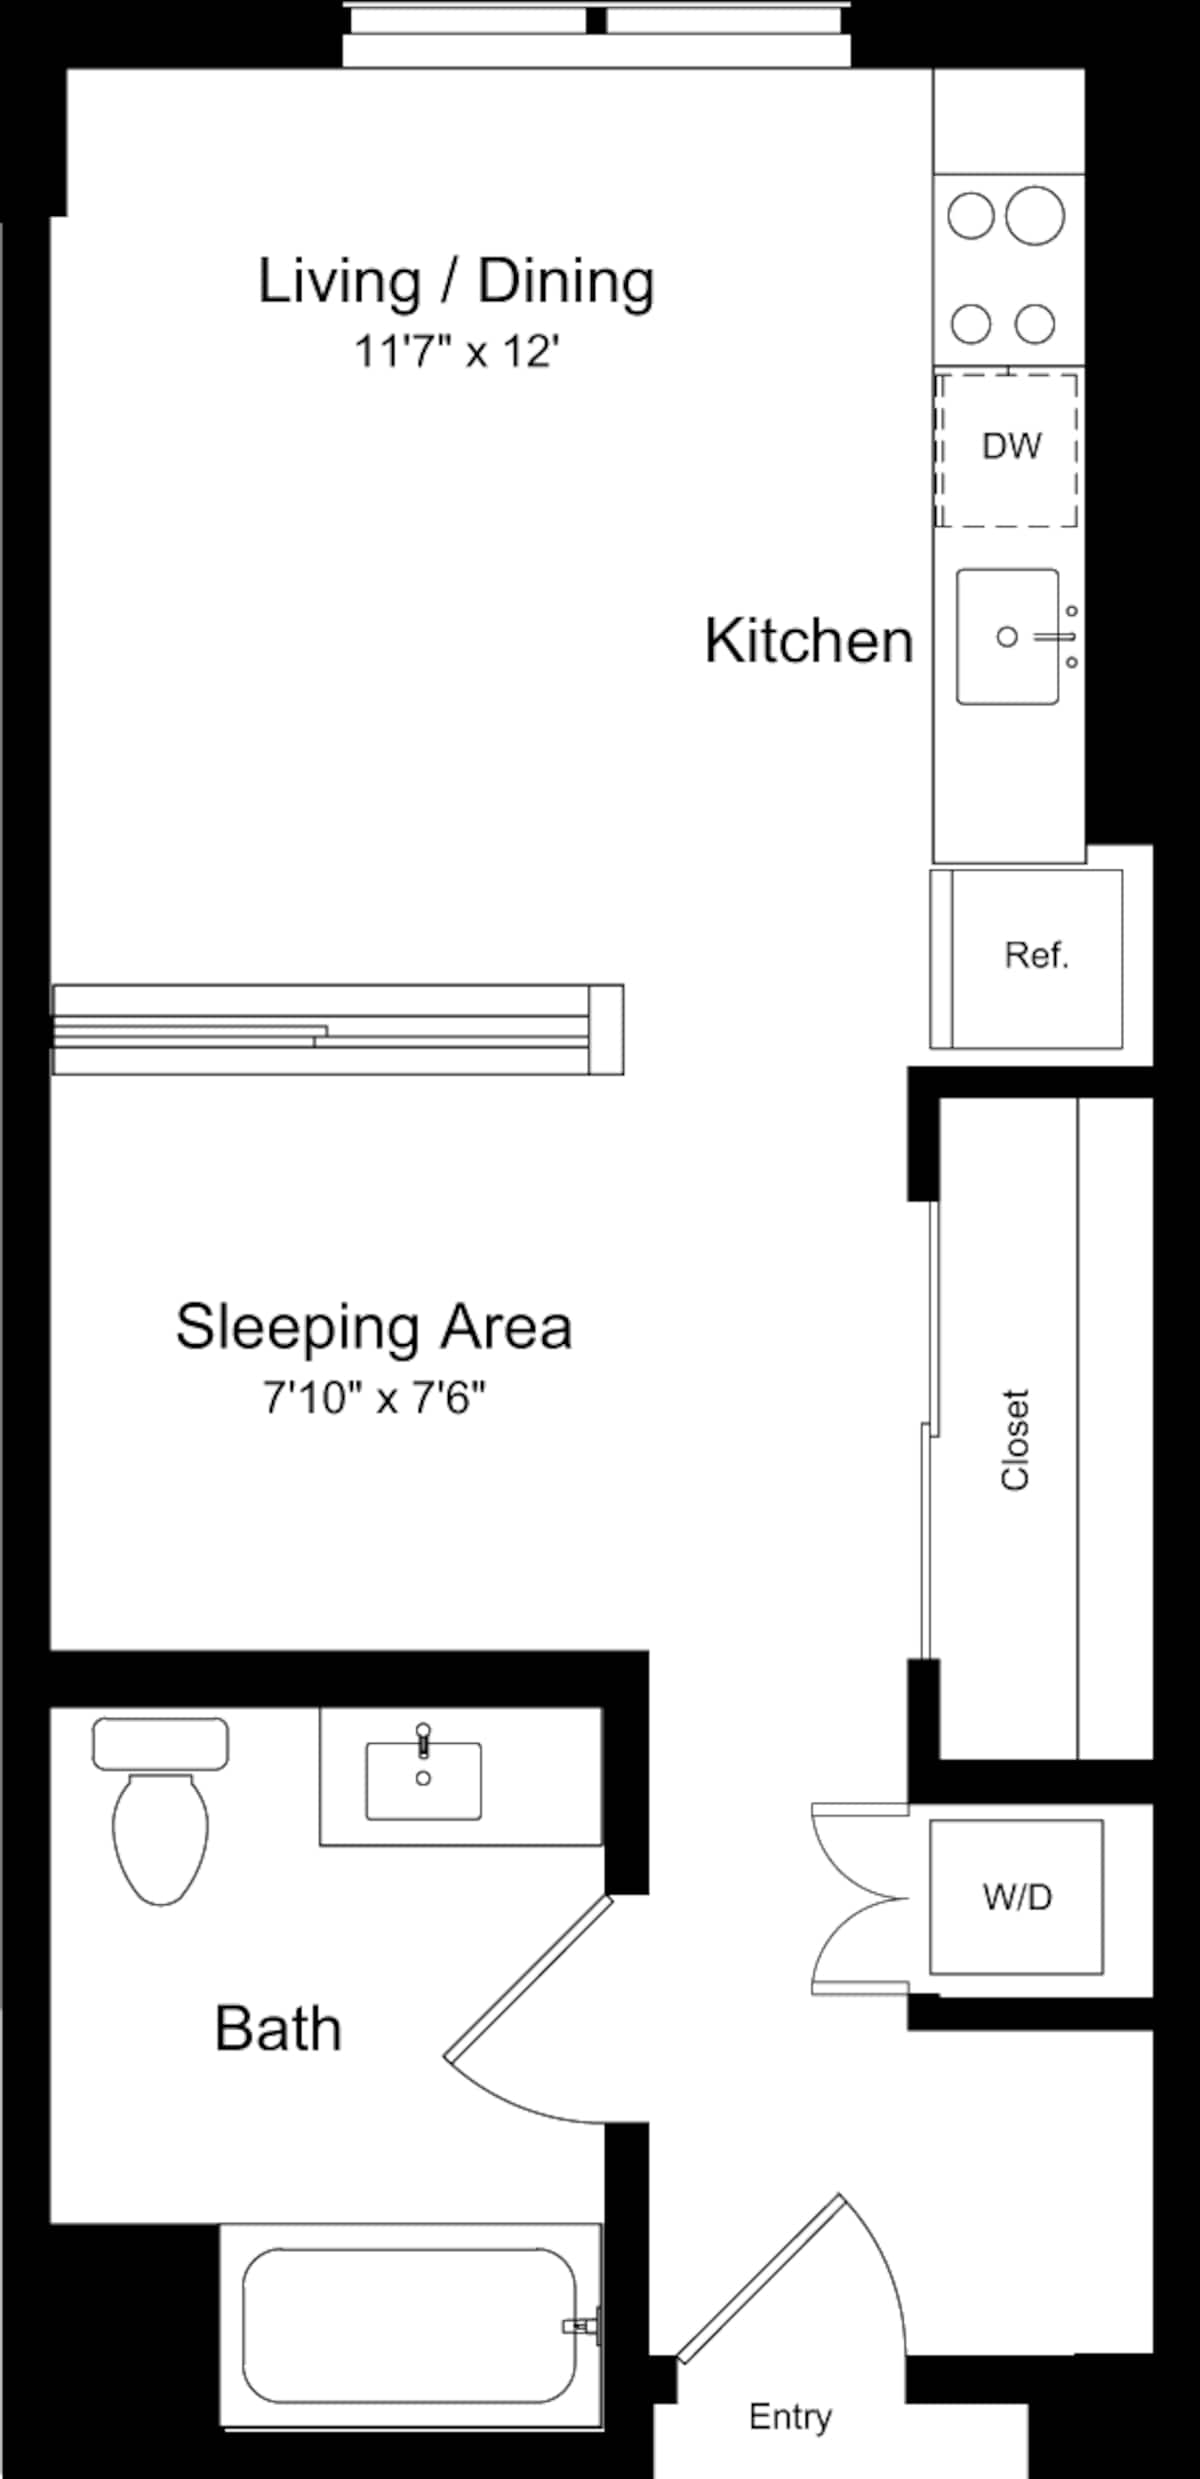 Floorplan diagram for Studio D, showing Studio